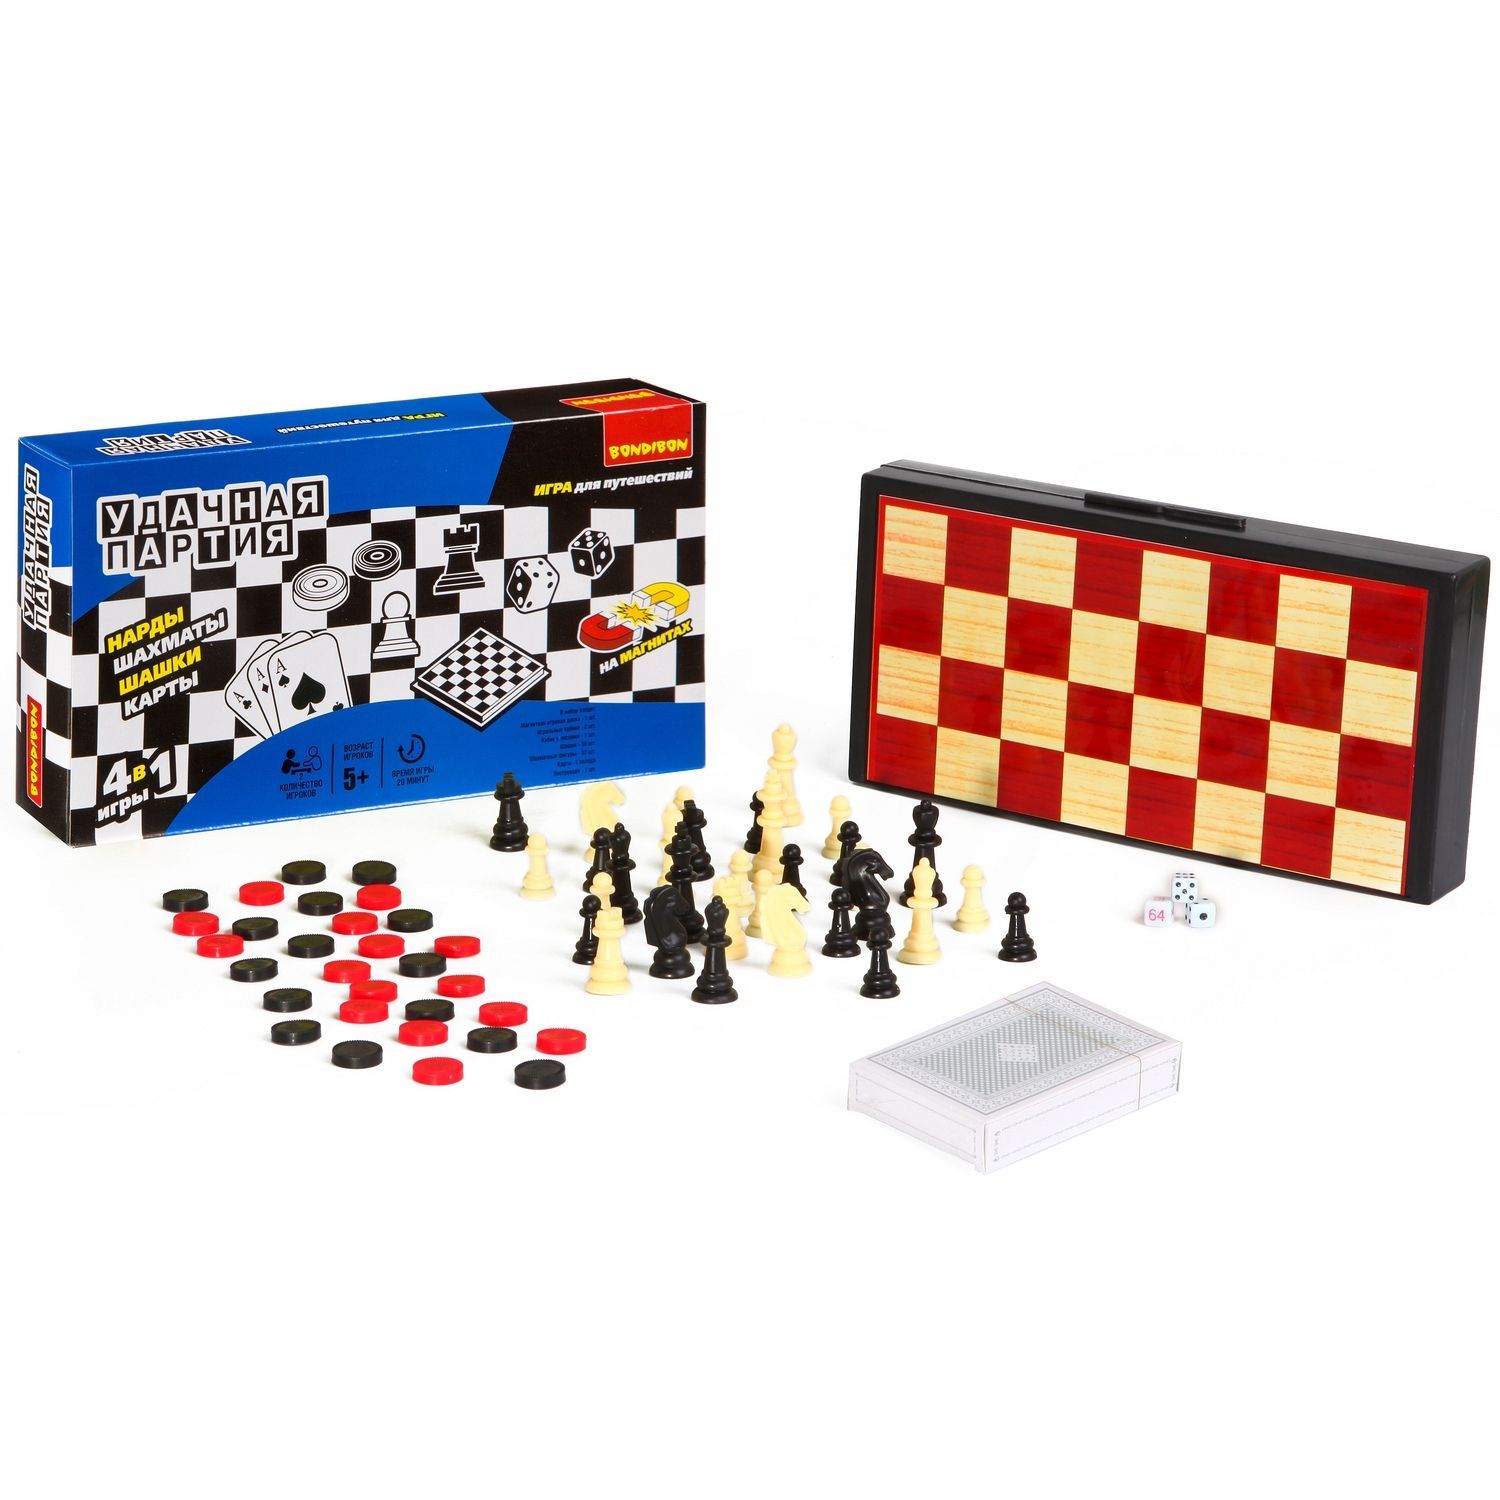 Удачная партия Бондибон BOX 4 в 1 шашки, шахматы, нарды, карты